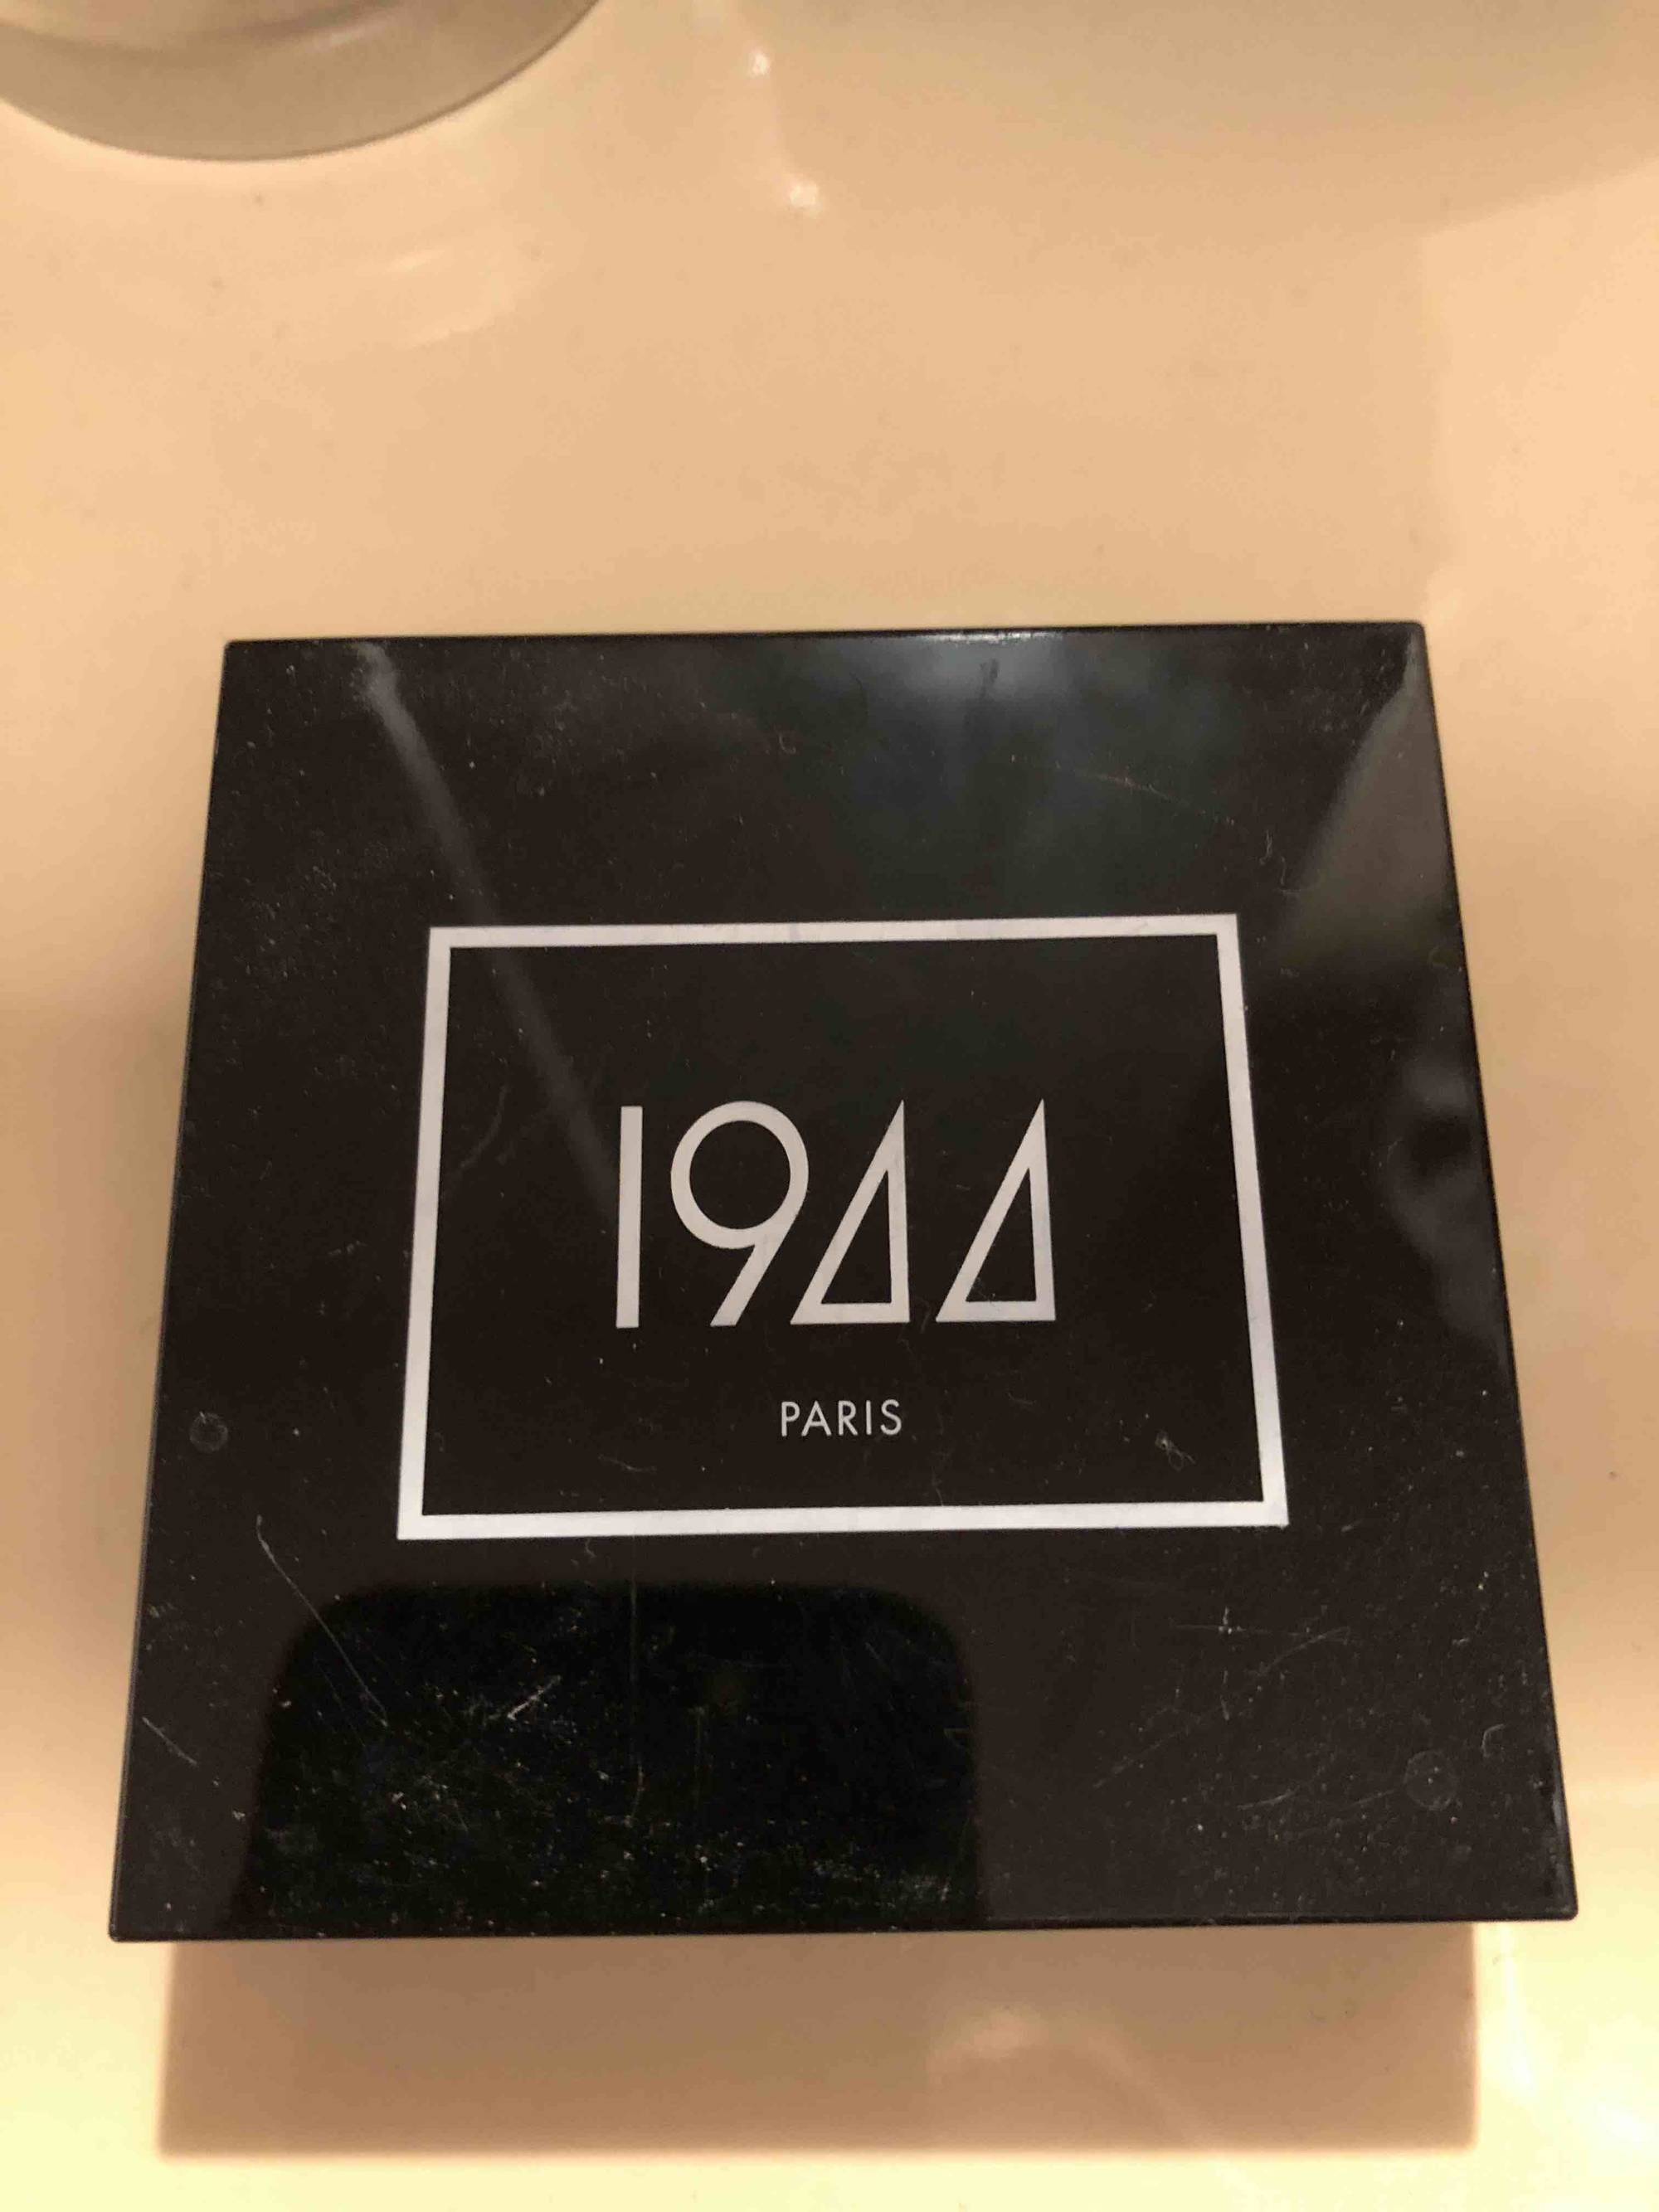 1944 PARIS - Poudre compacte naturelle perfecteur de teint PC001